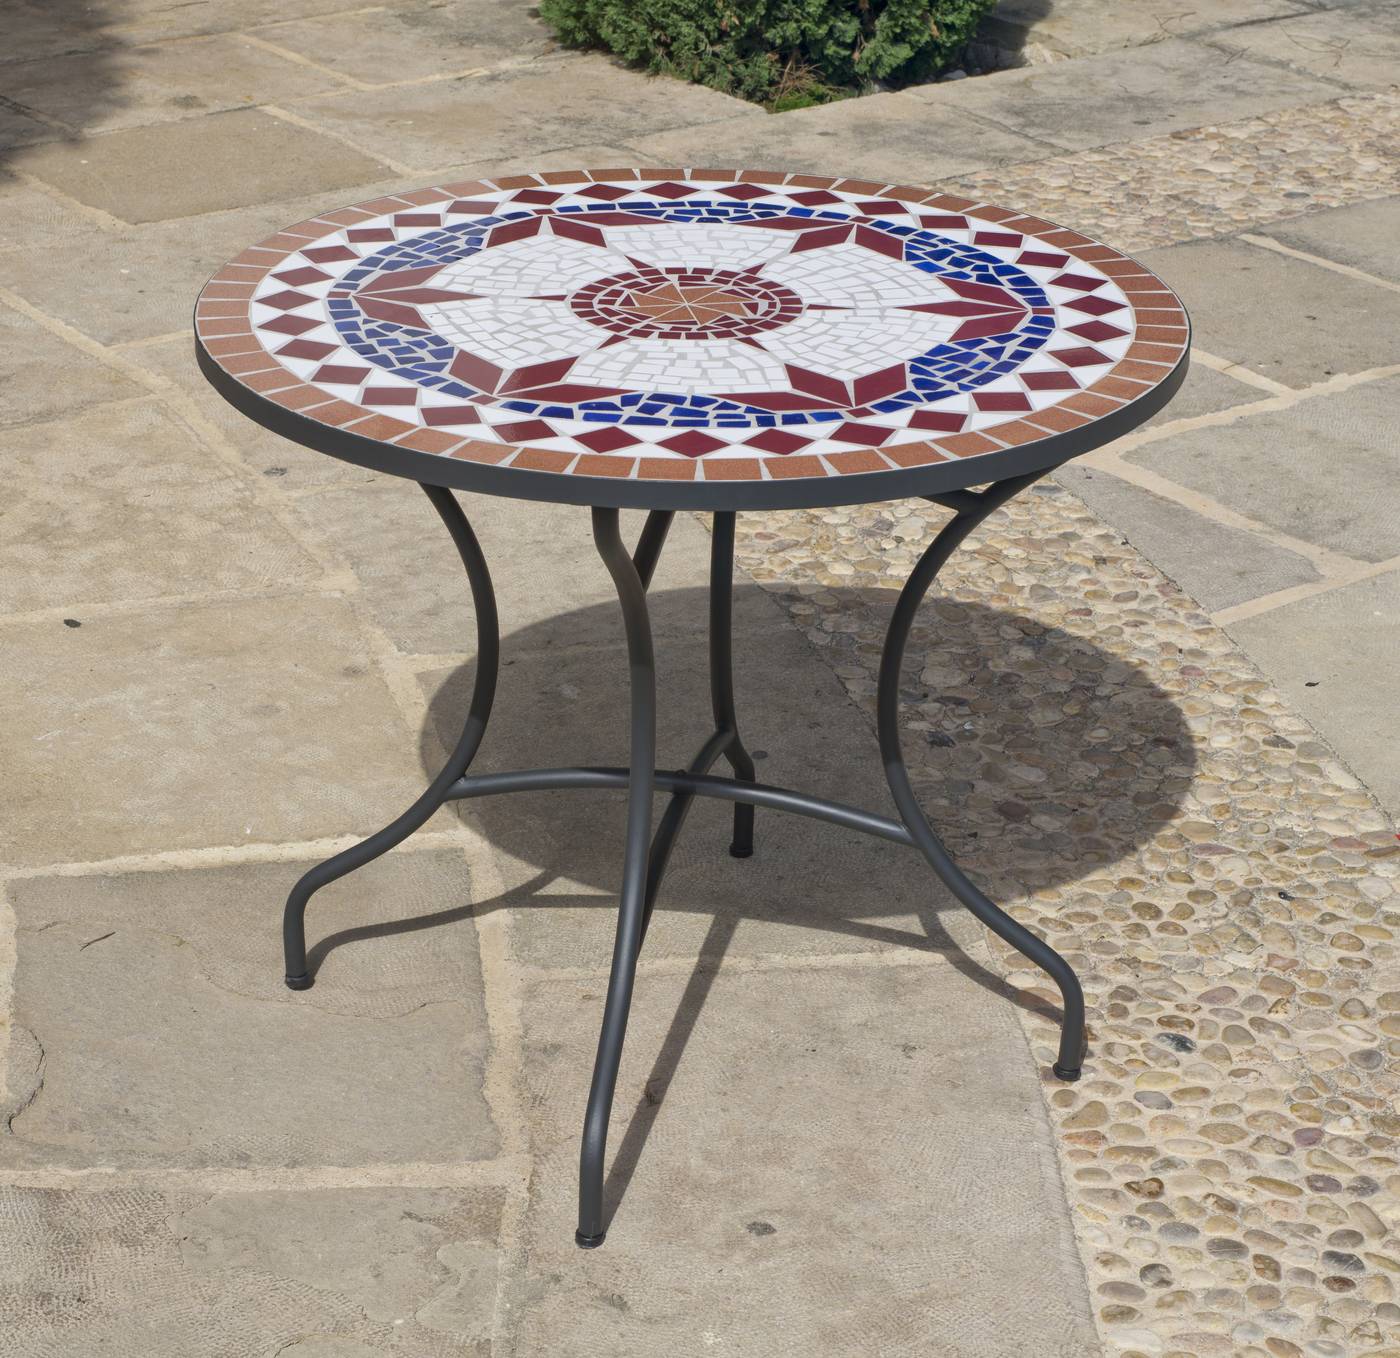 Set Mosaico Dadevil-Beldey 90-6 - Conjunto de forja color bronce: mesa redonda de acero forjado, con tablero mosaico de 90 cm. + 4 sillones de acero y wicker